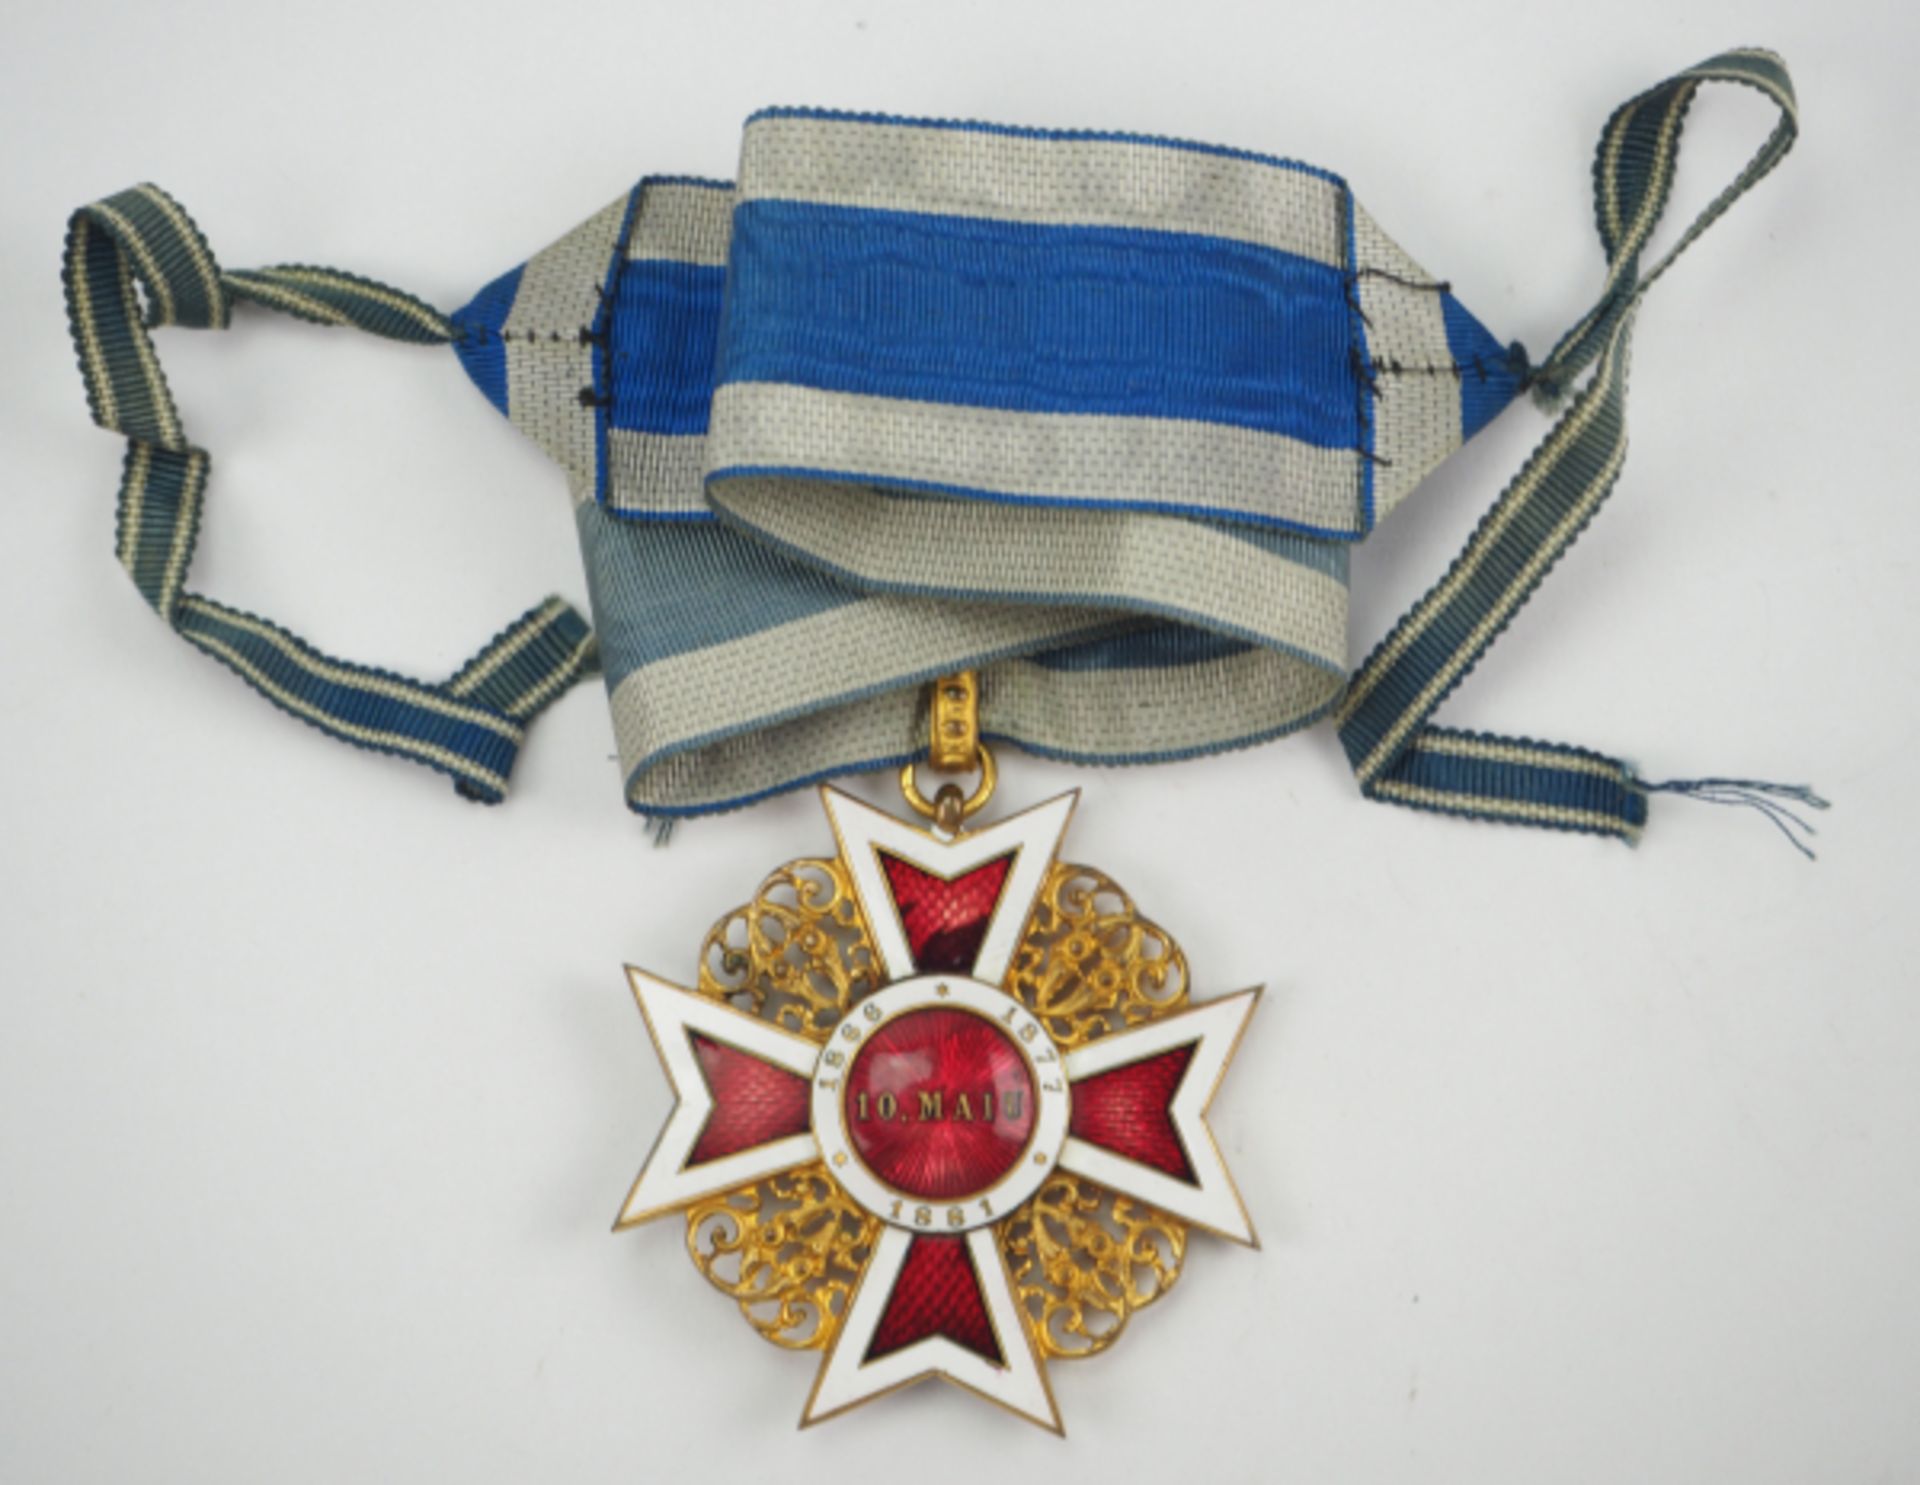 Rumänien : Orden der Krone von Rumänien, 1. Modell (1881-1932), Komturkreuz. - Bild 3 aus 3